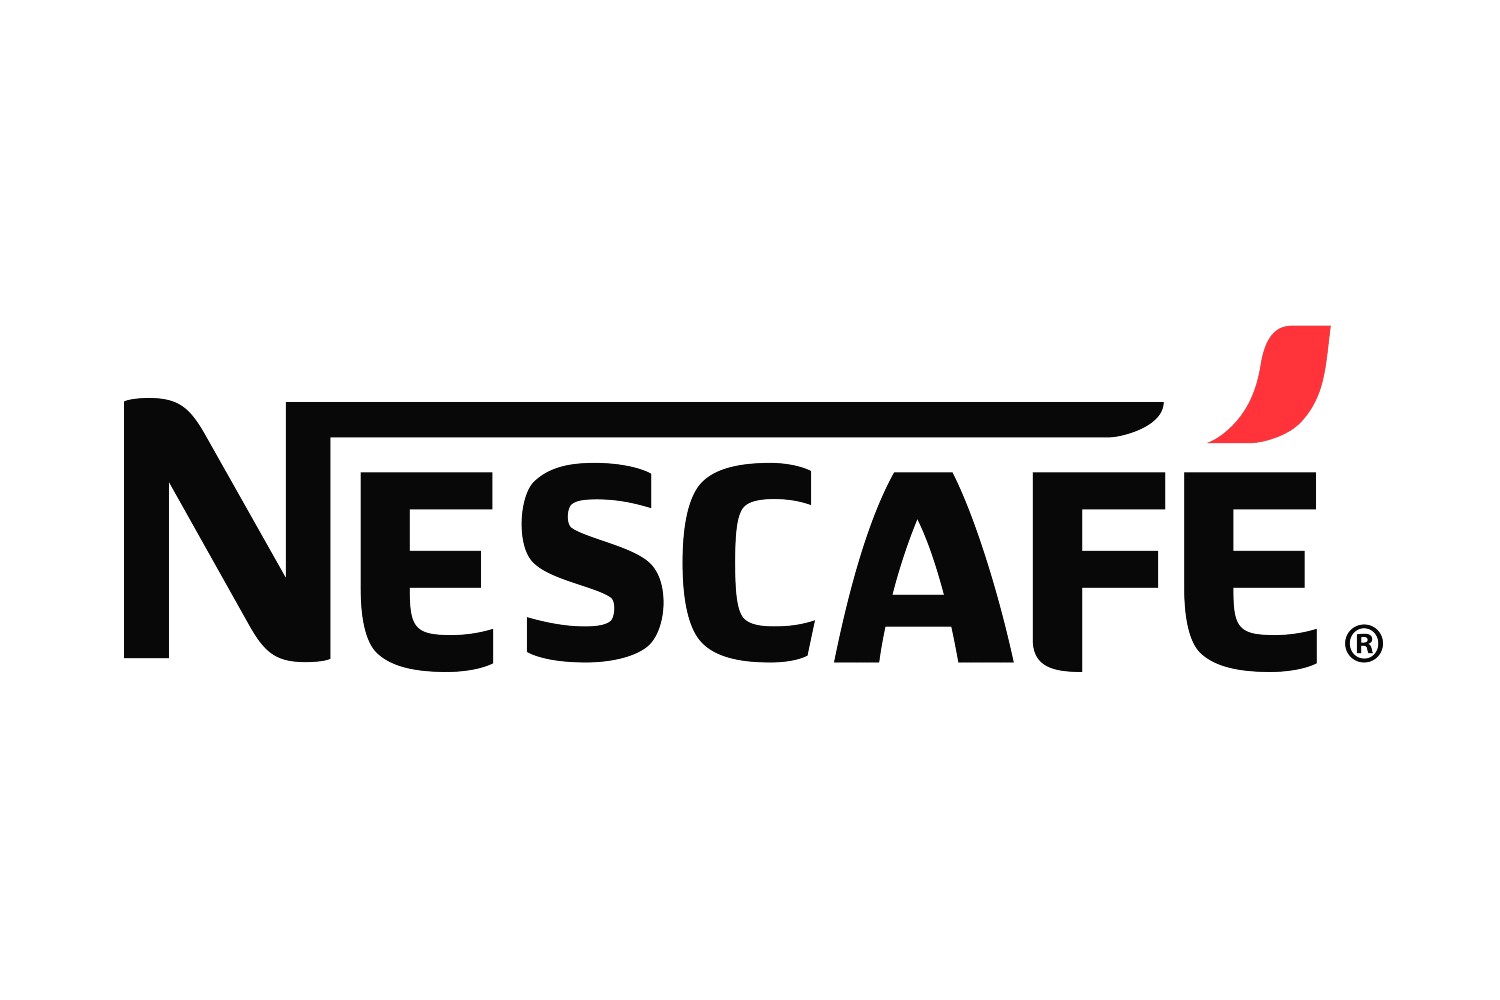 Impact environnemental: Le nouveau café de Nestlé est-il vraiment durable?